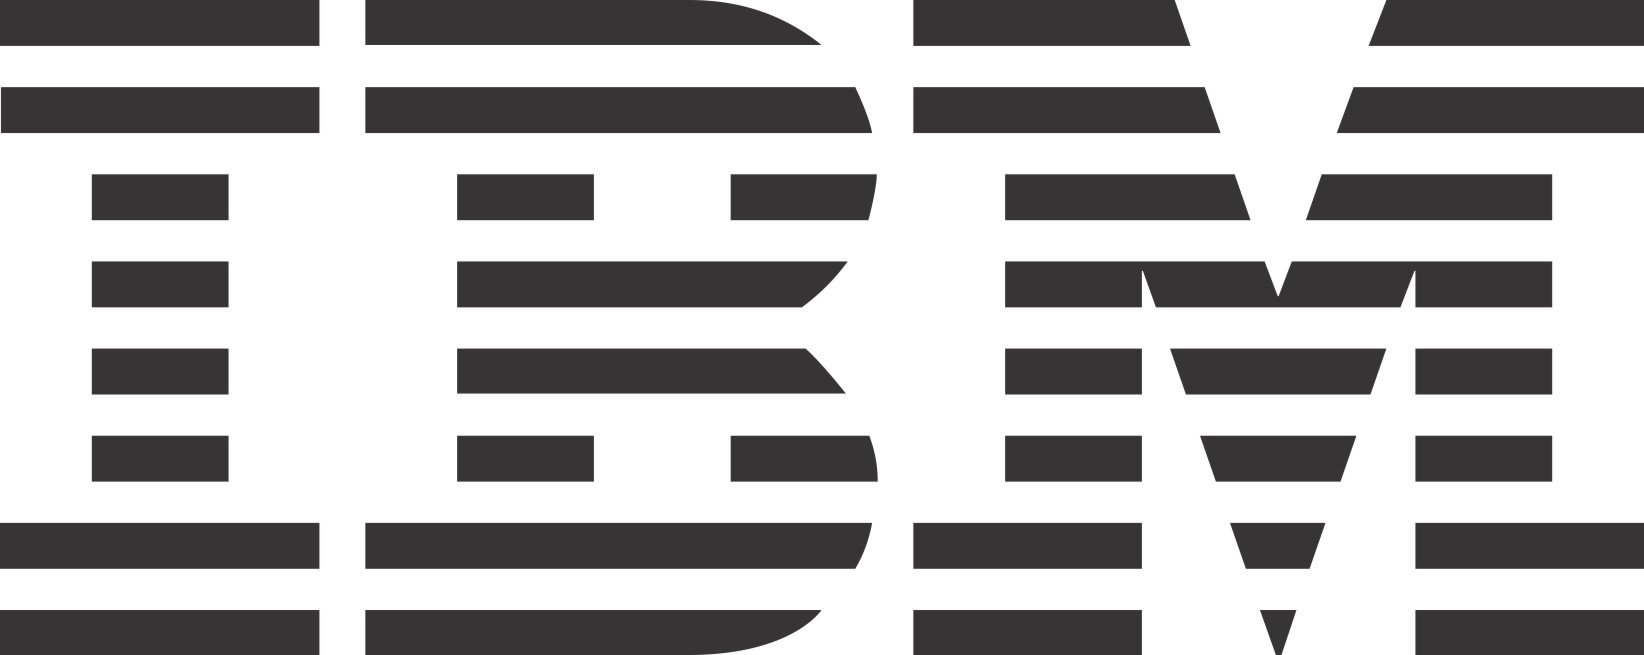 IBM_black.jpg